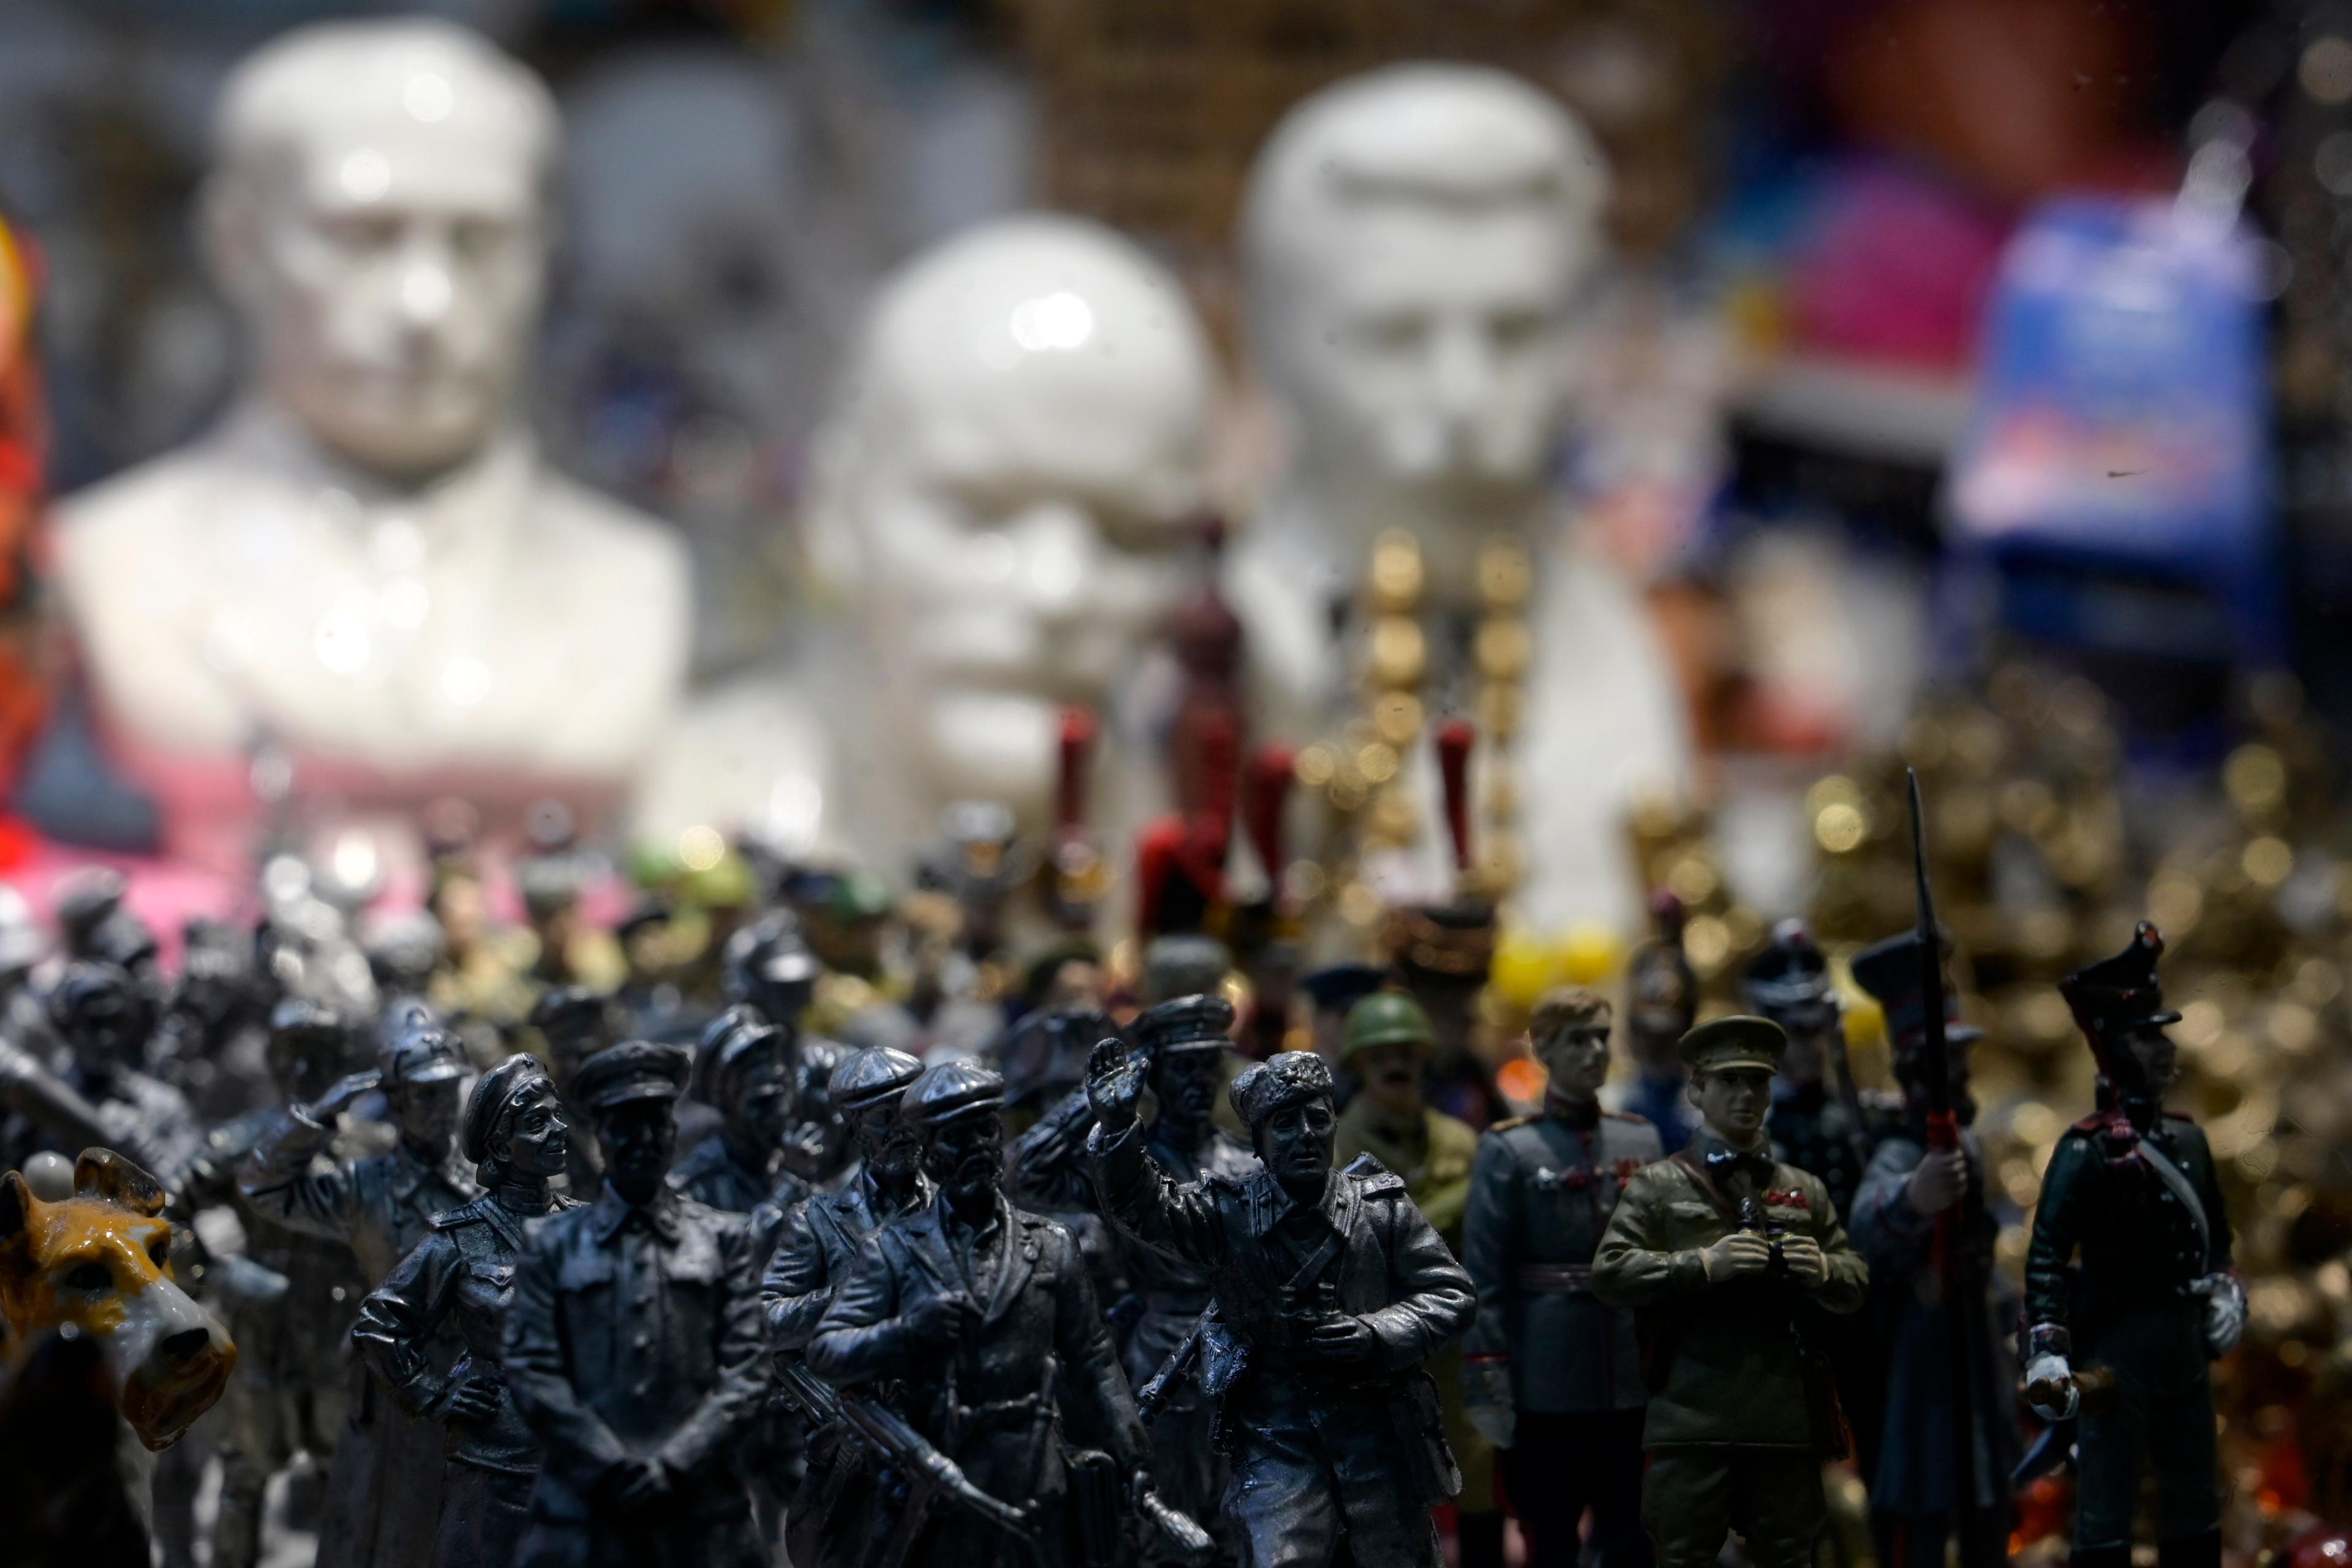 Figurki zołnierzy i popiersia Stalina, Lenina i Putina na wystawie sklepowej